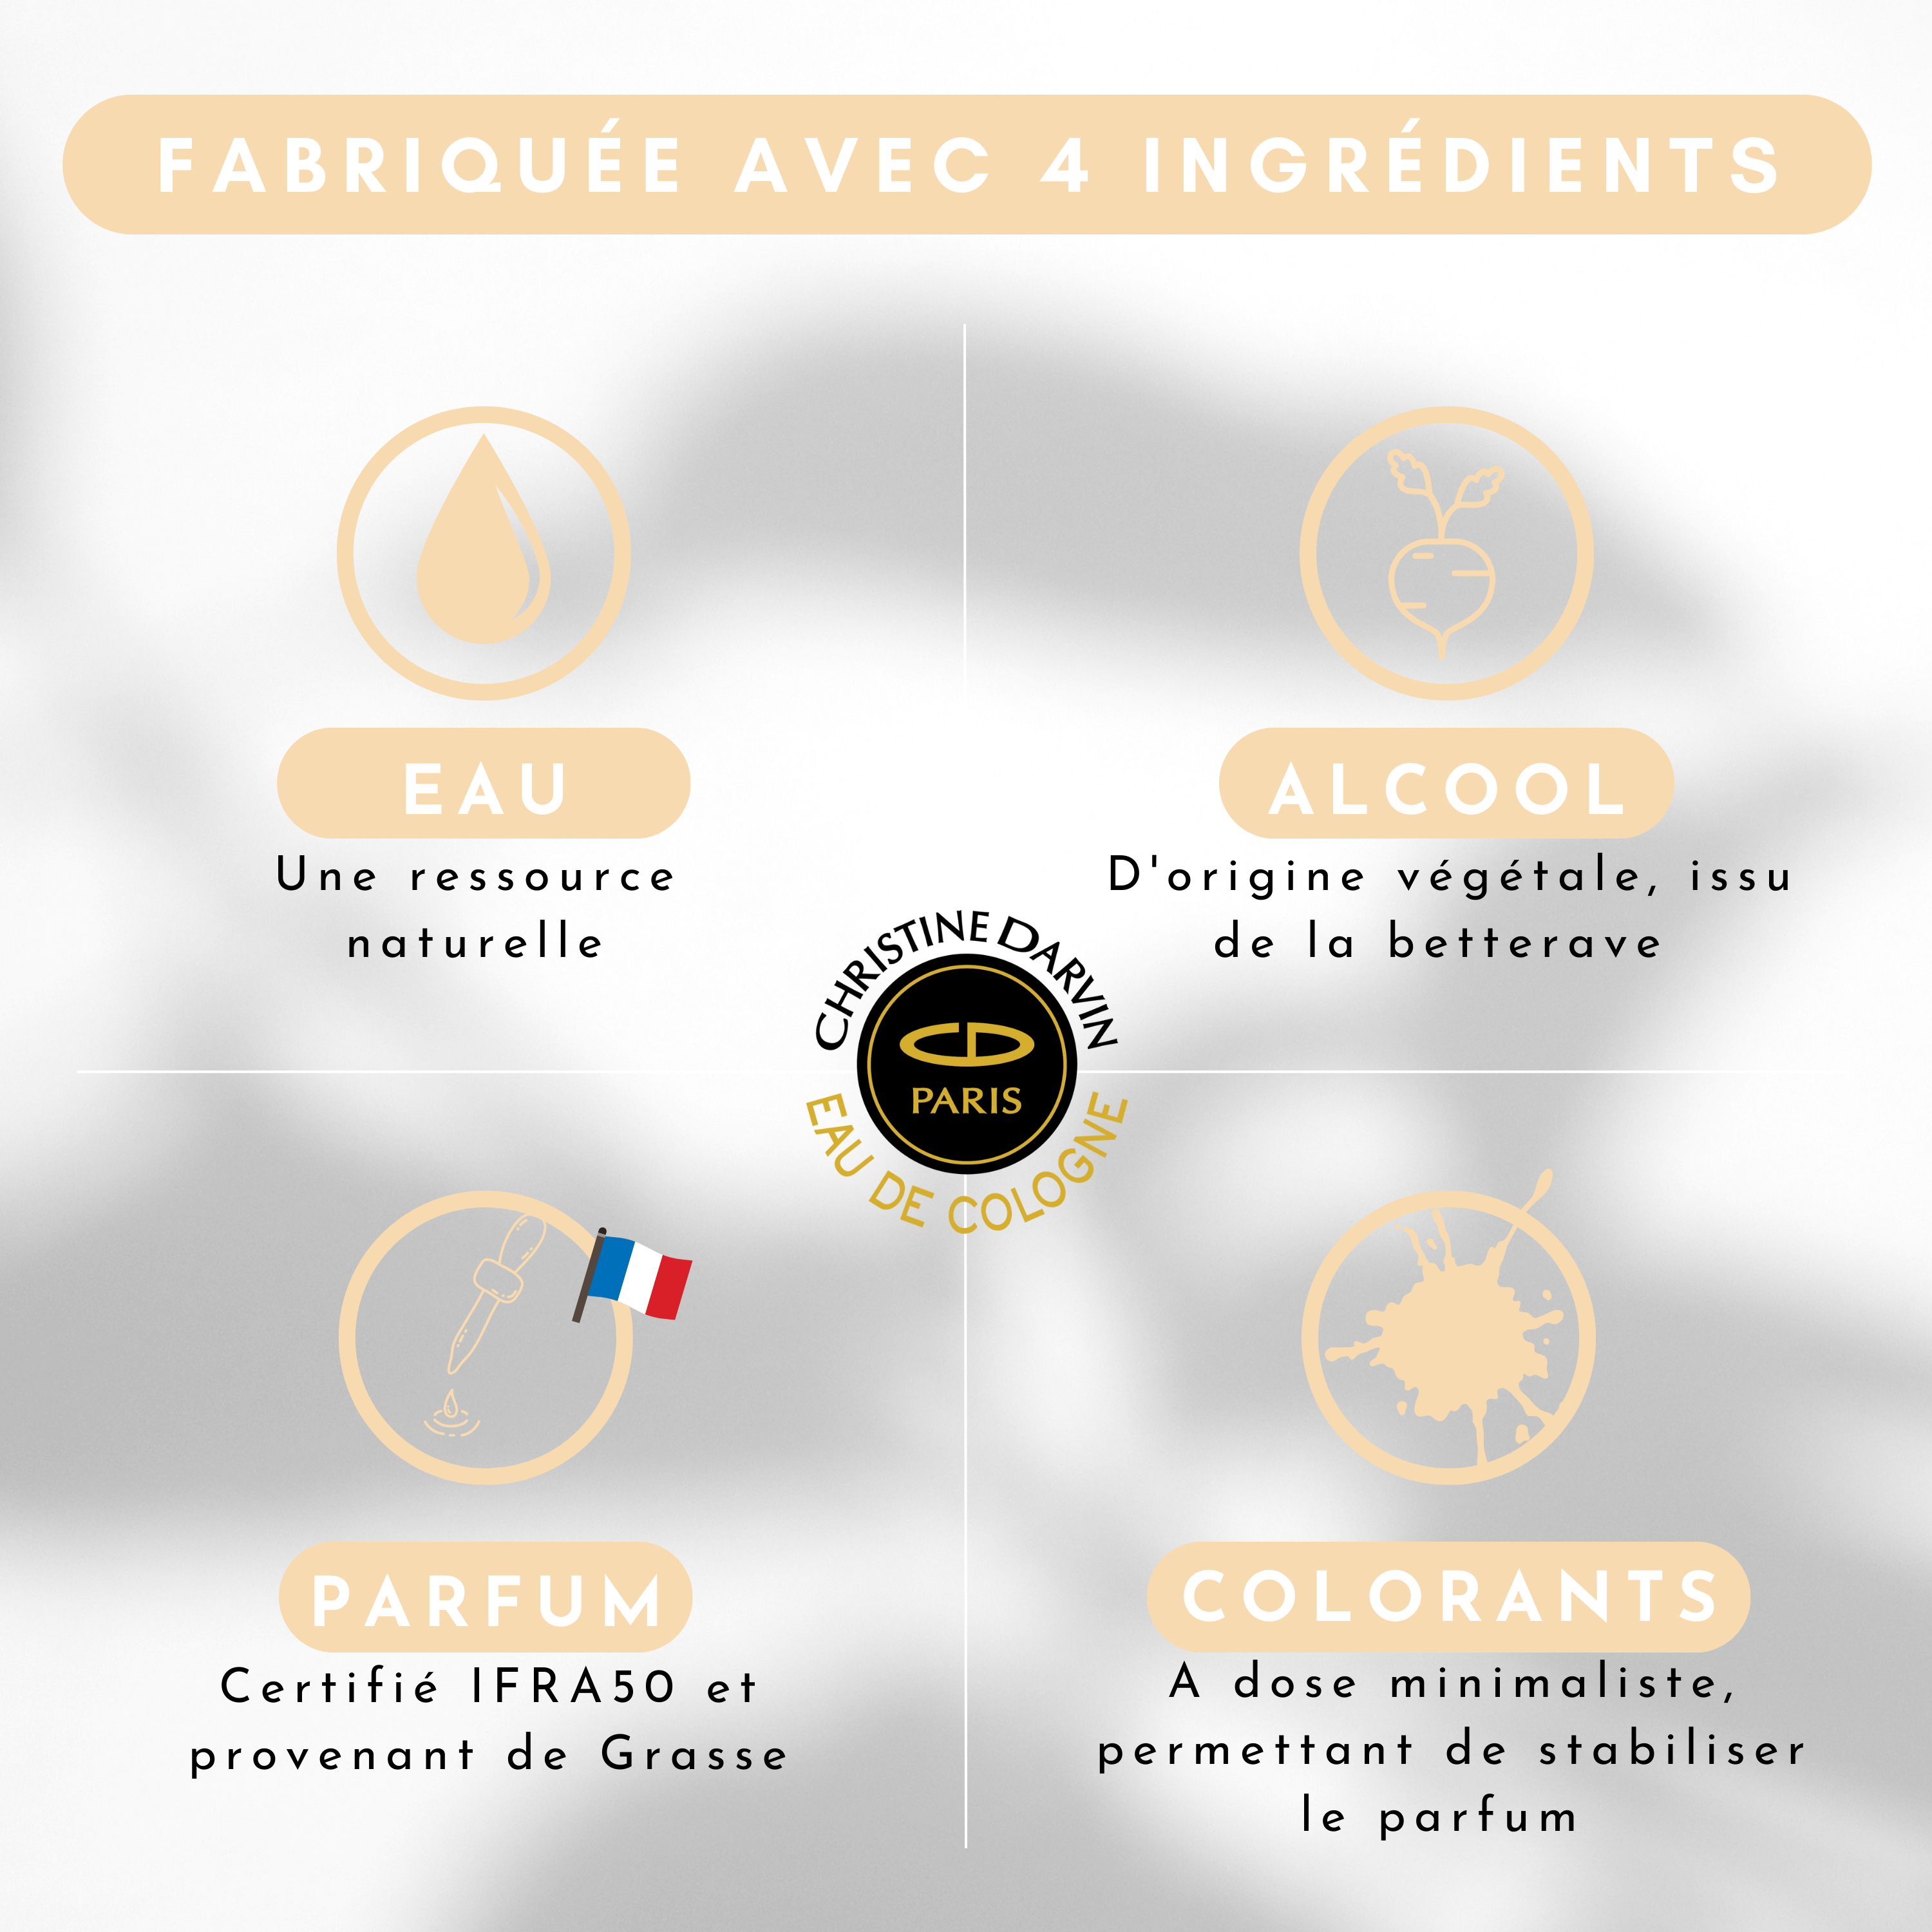 Ingrédient eau de Cologne parfum Musc Blanc 97% d'origine naturelle et 100% français